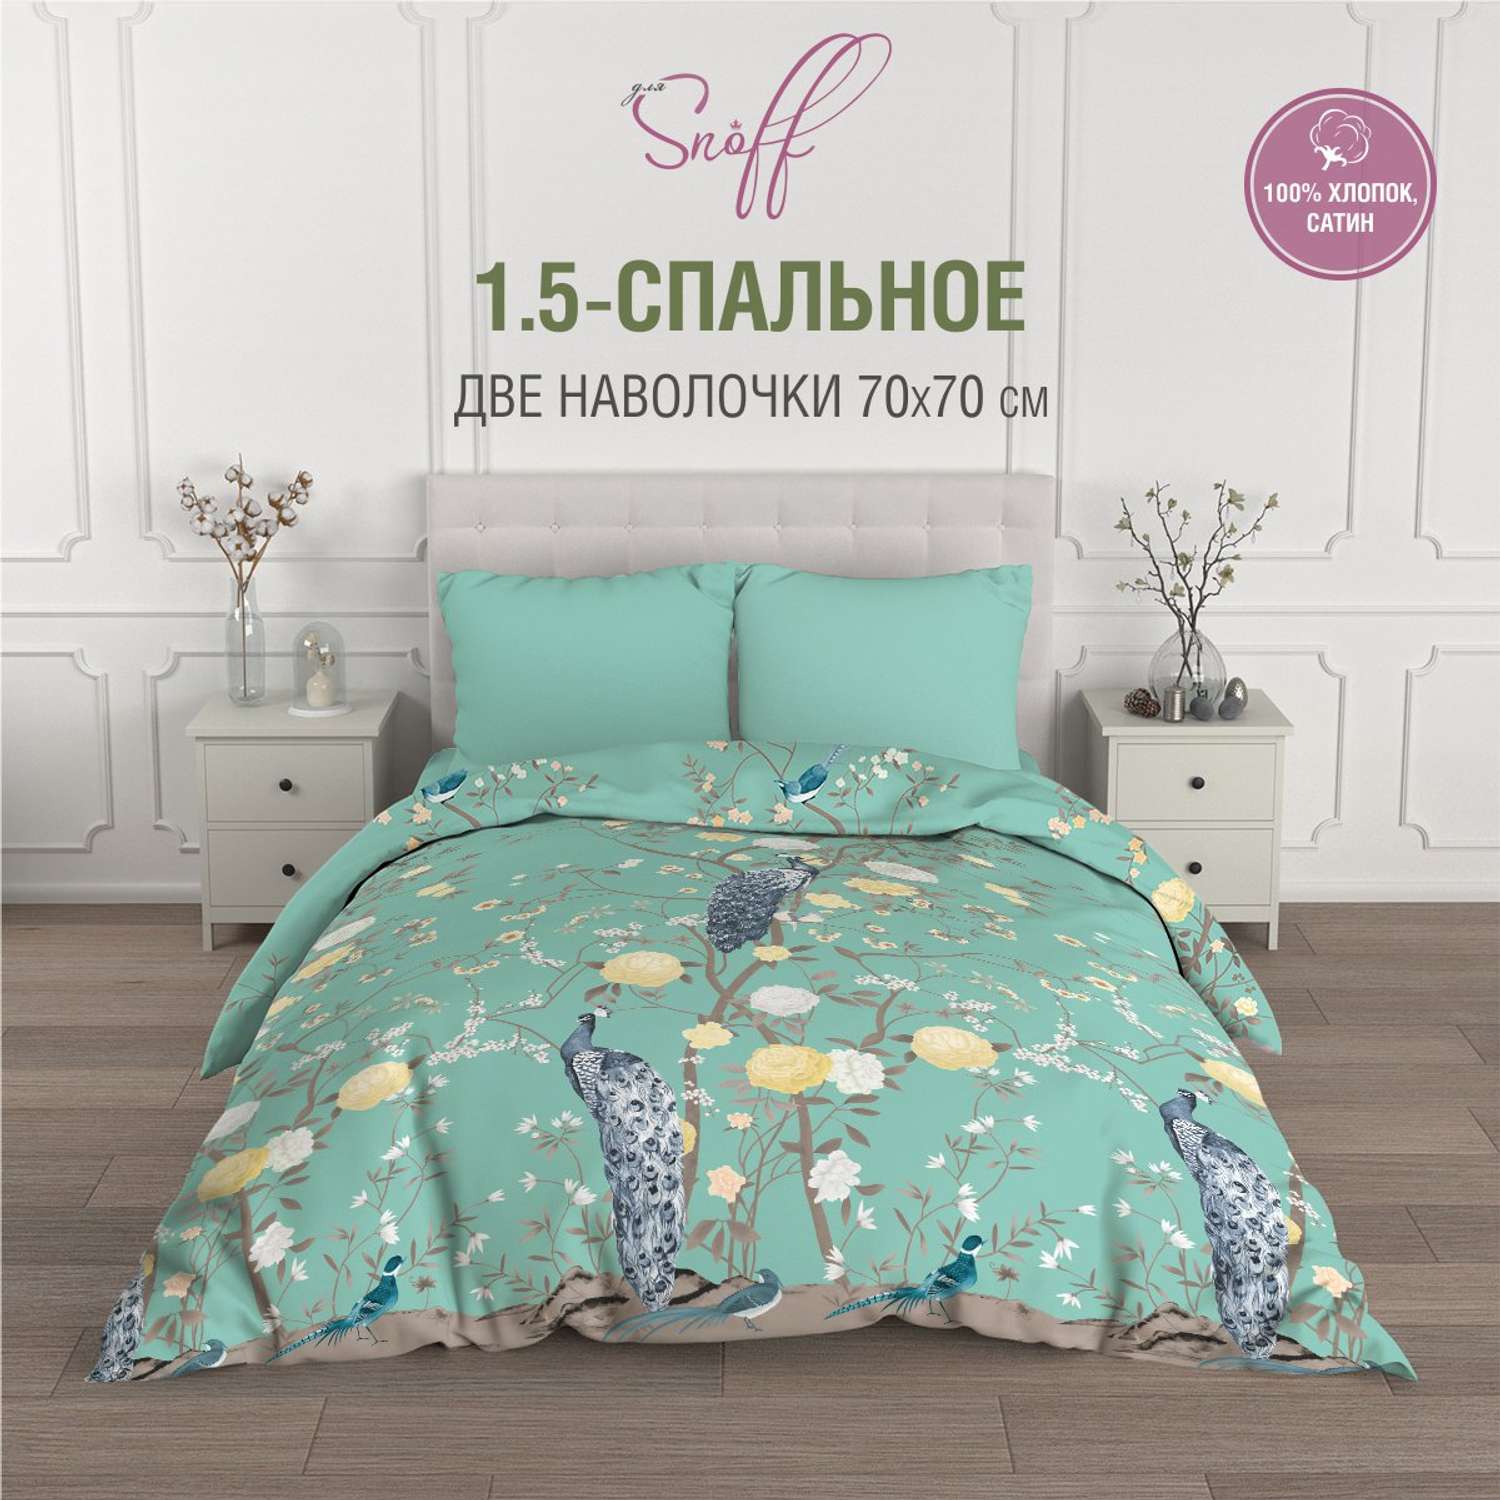 Комплект постельного белья для SNOFF Пава 1.5-спальный сатин рис.4628-1+4628а-1 - фото 1